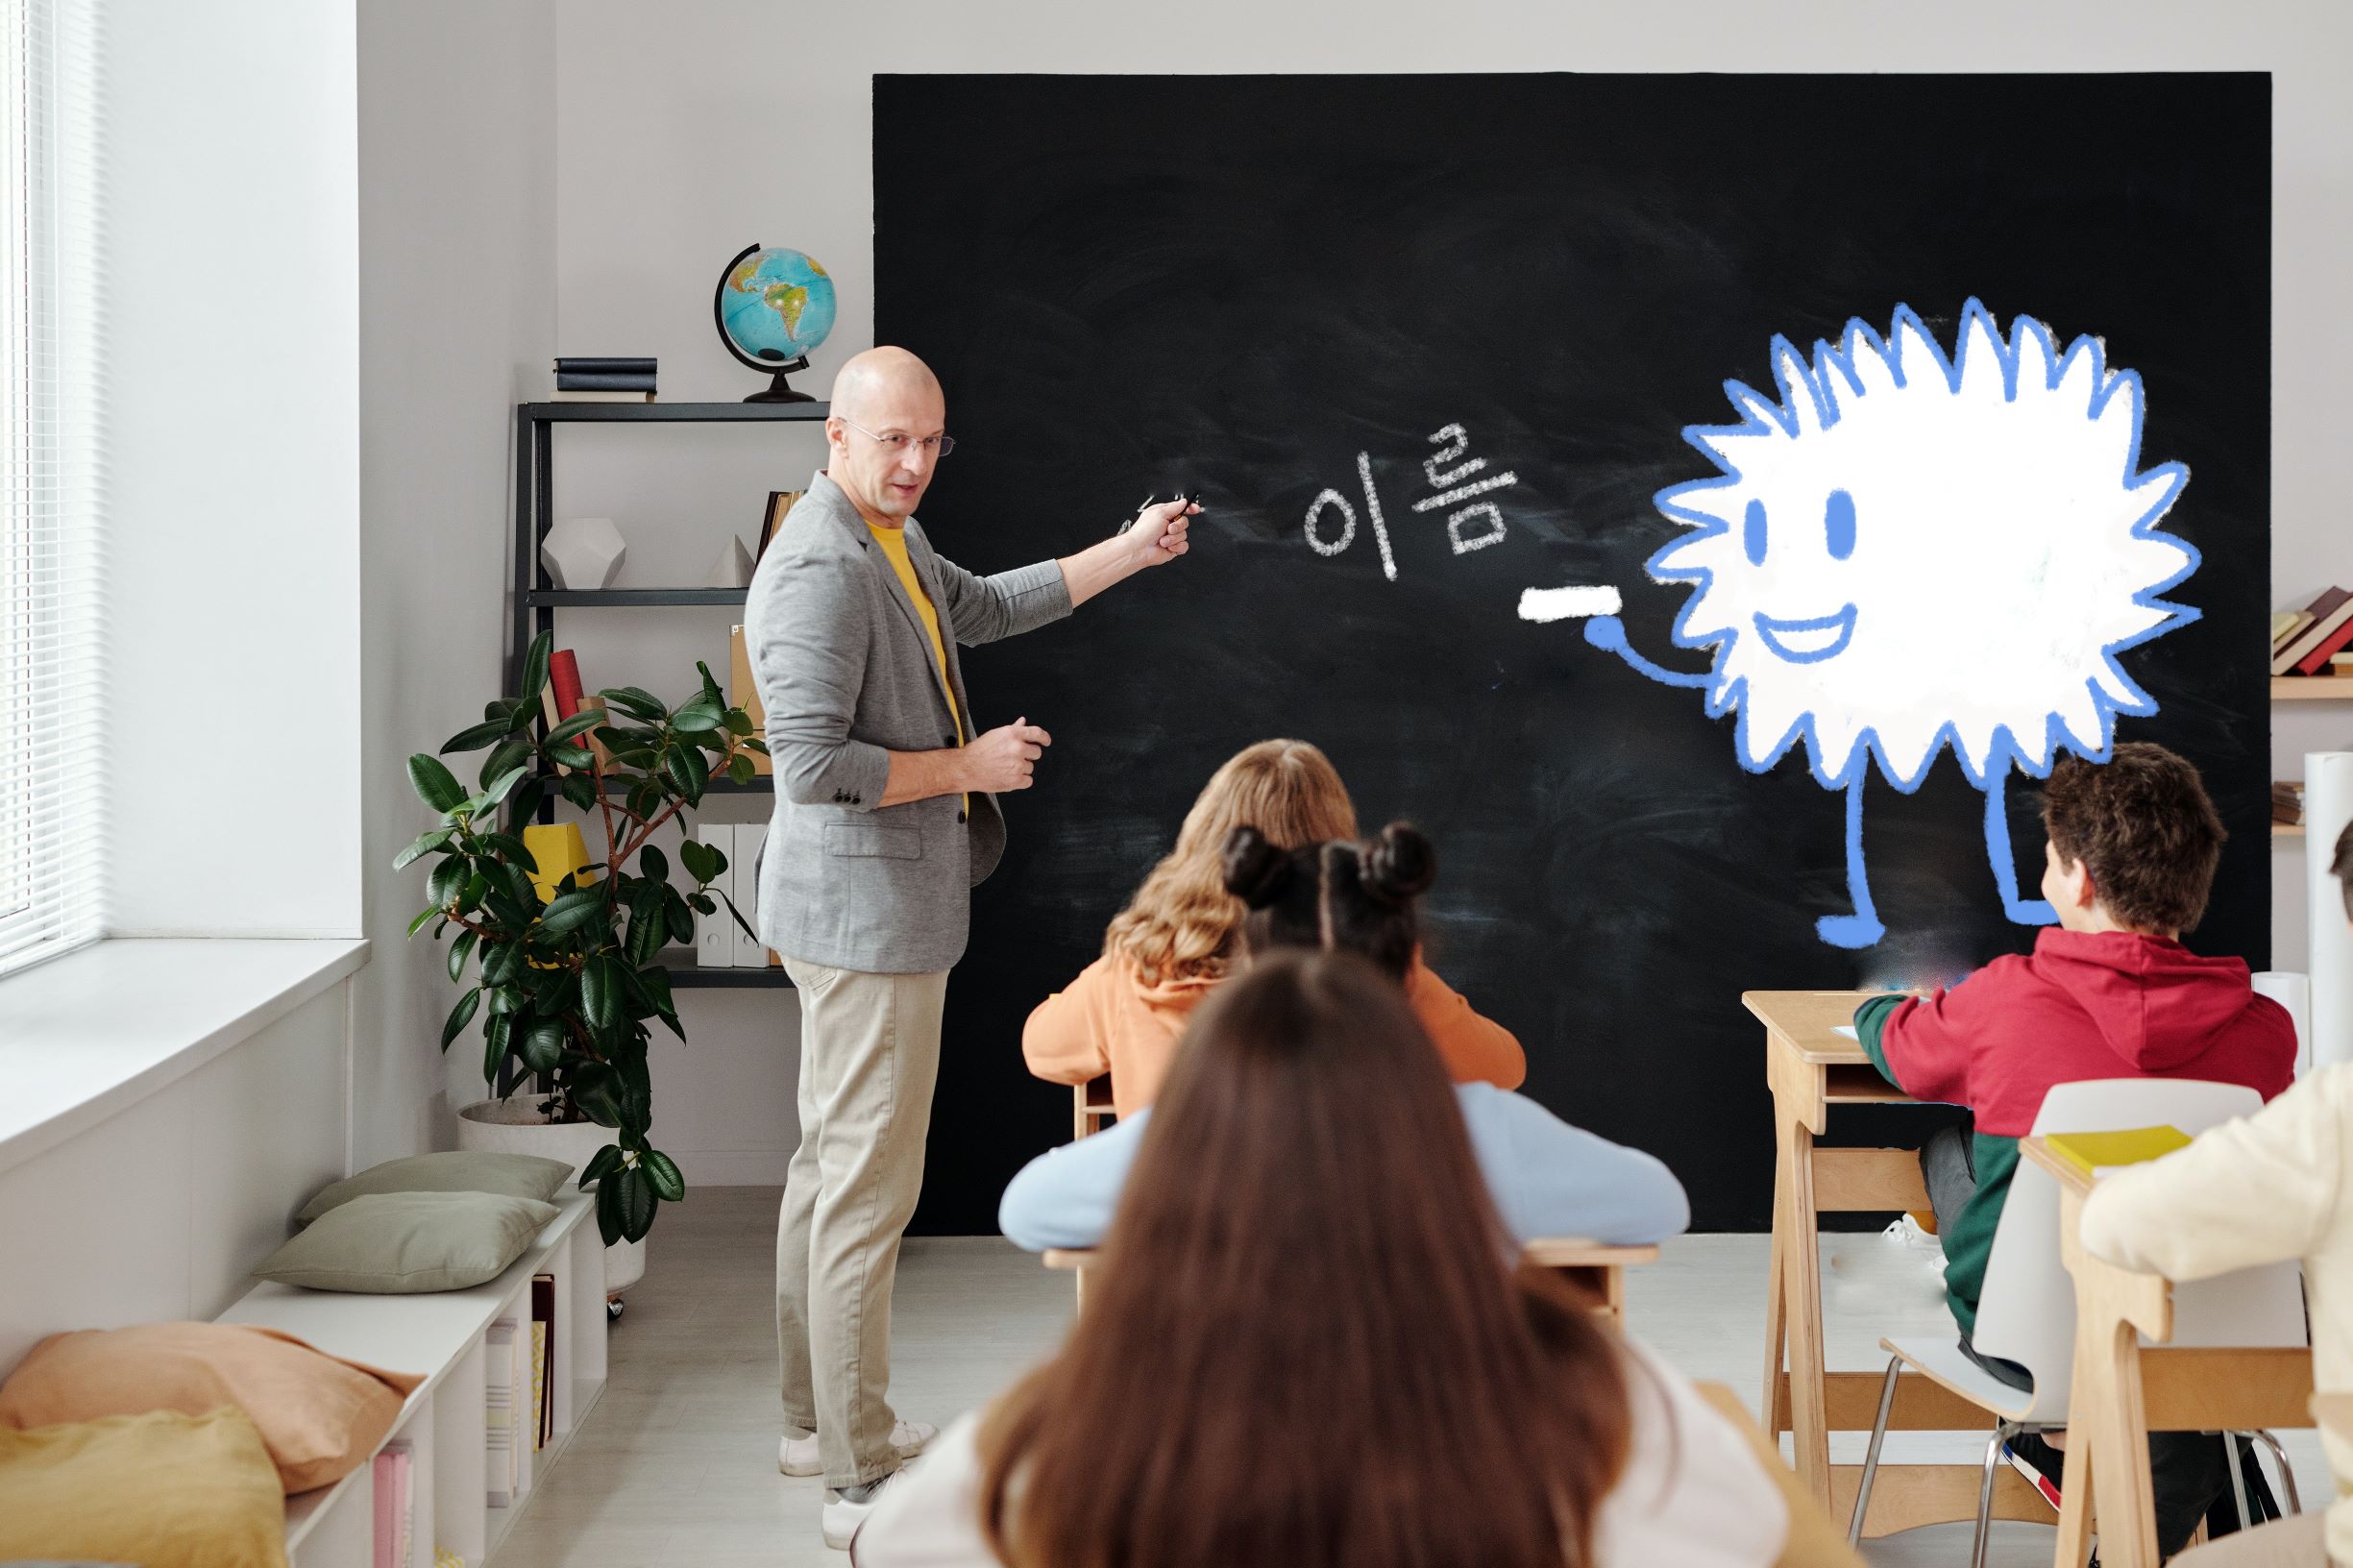 Critter teaching Korean to class